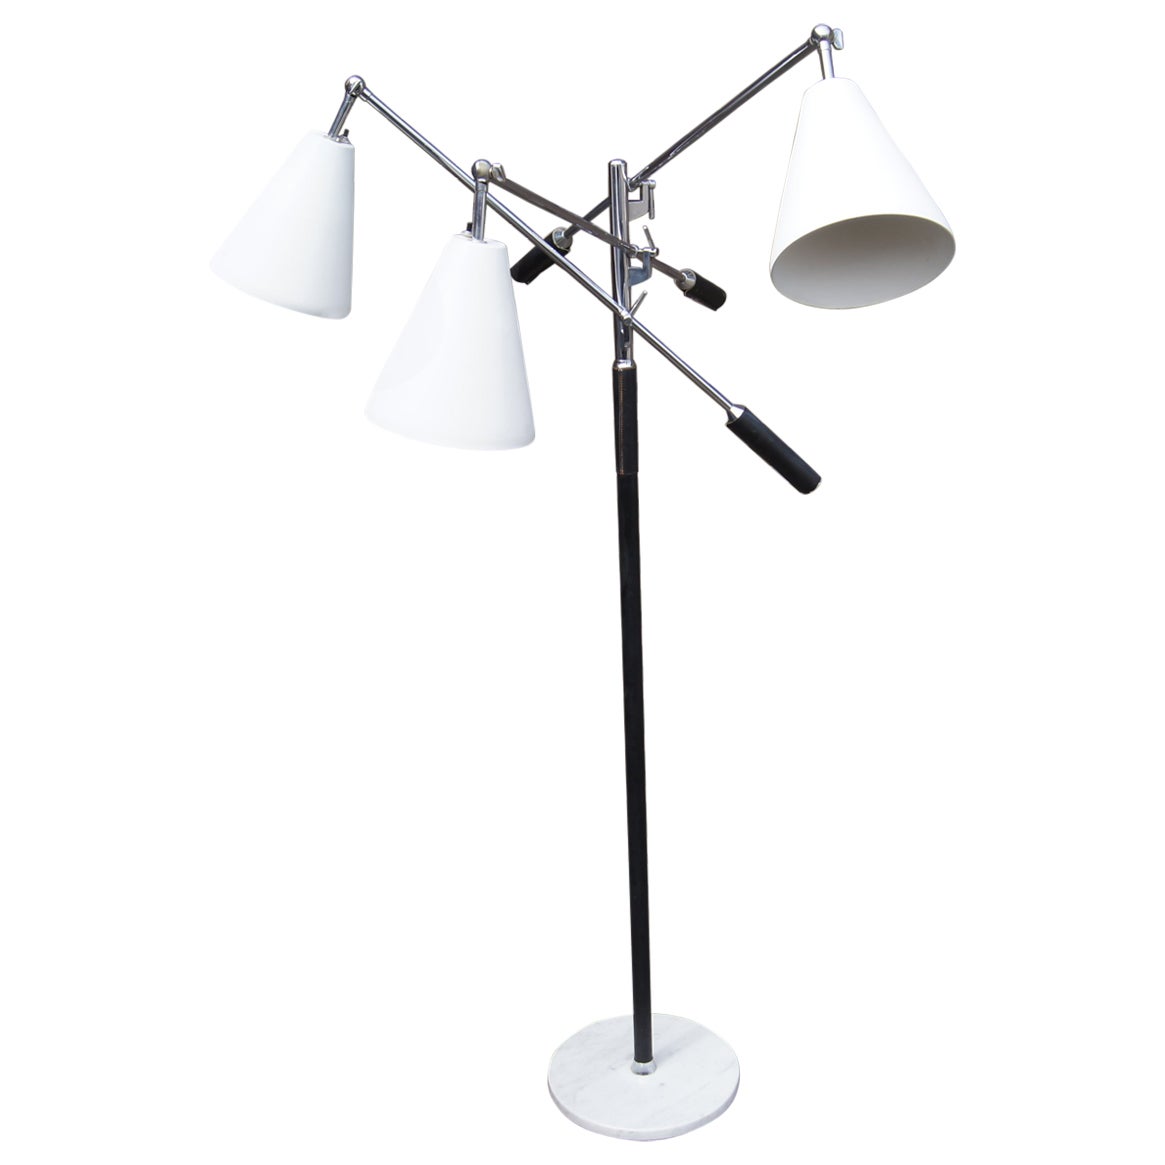 Italian Triennale-Style Floor Lamp by Koch & Lowy For Sale